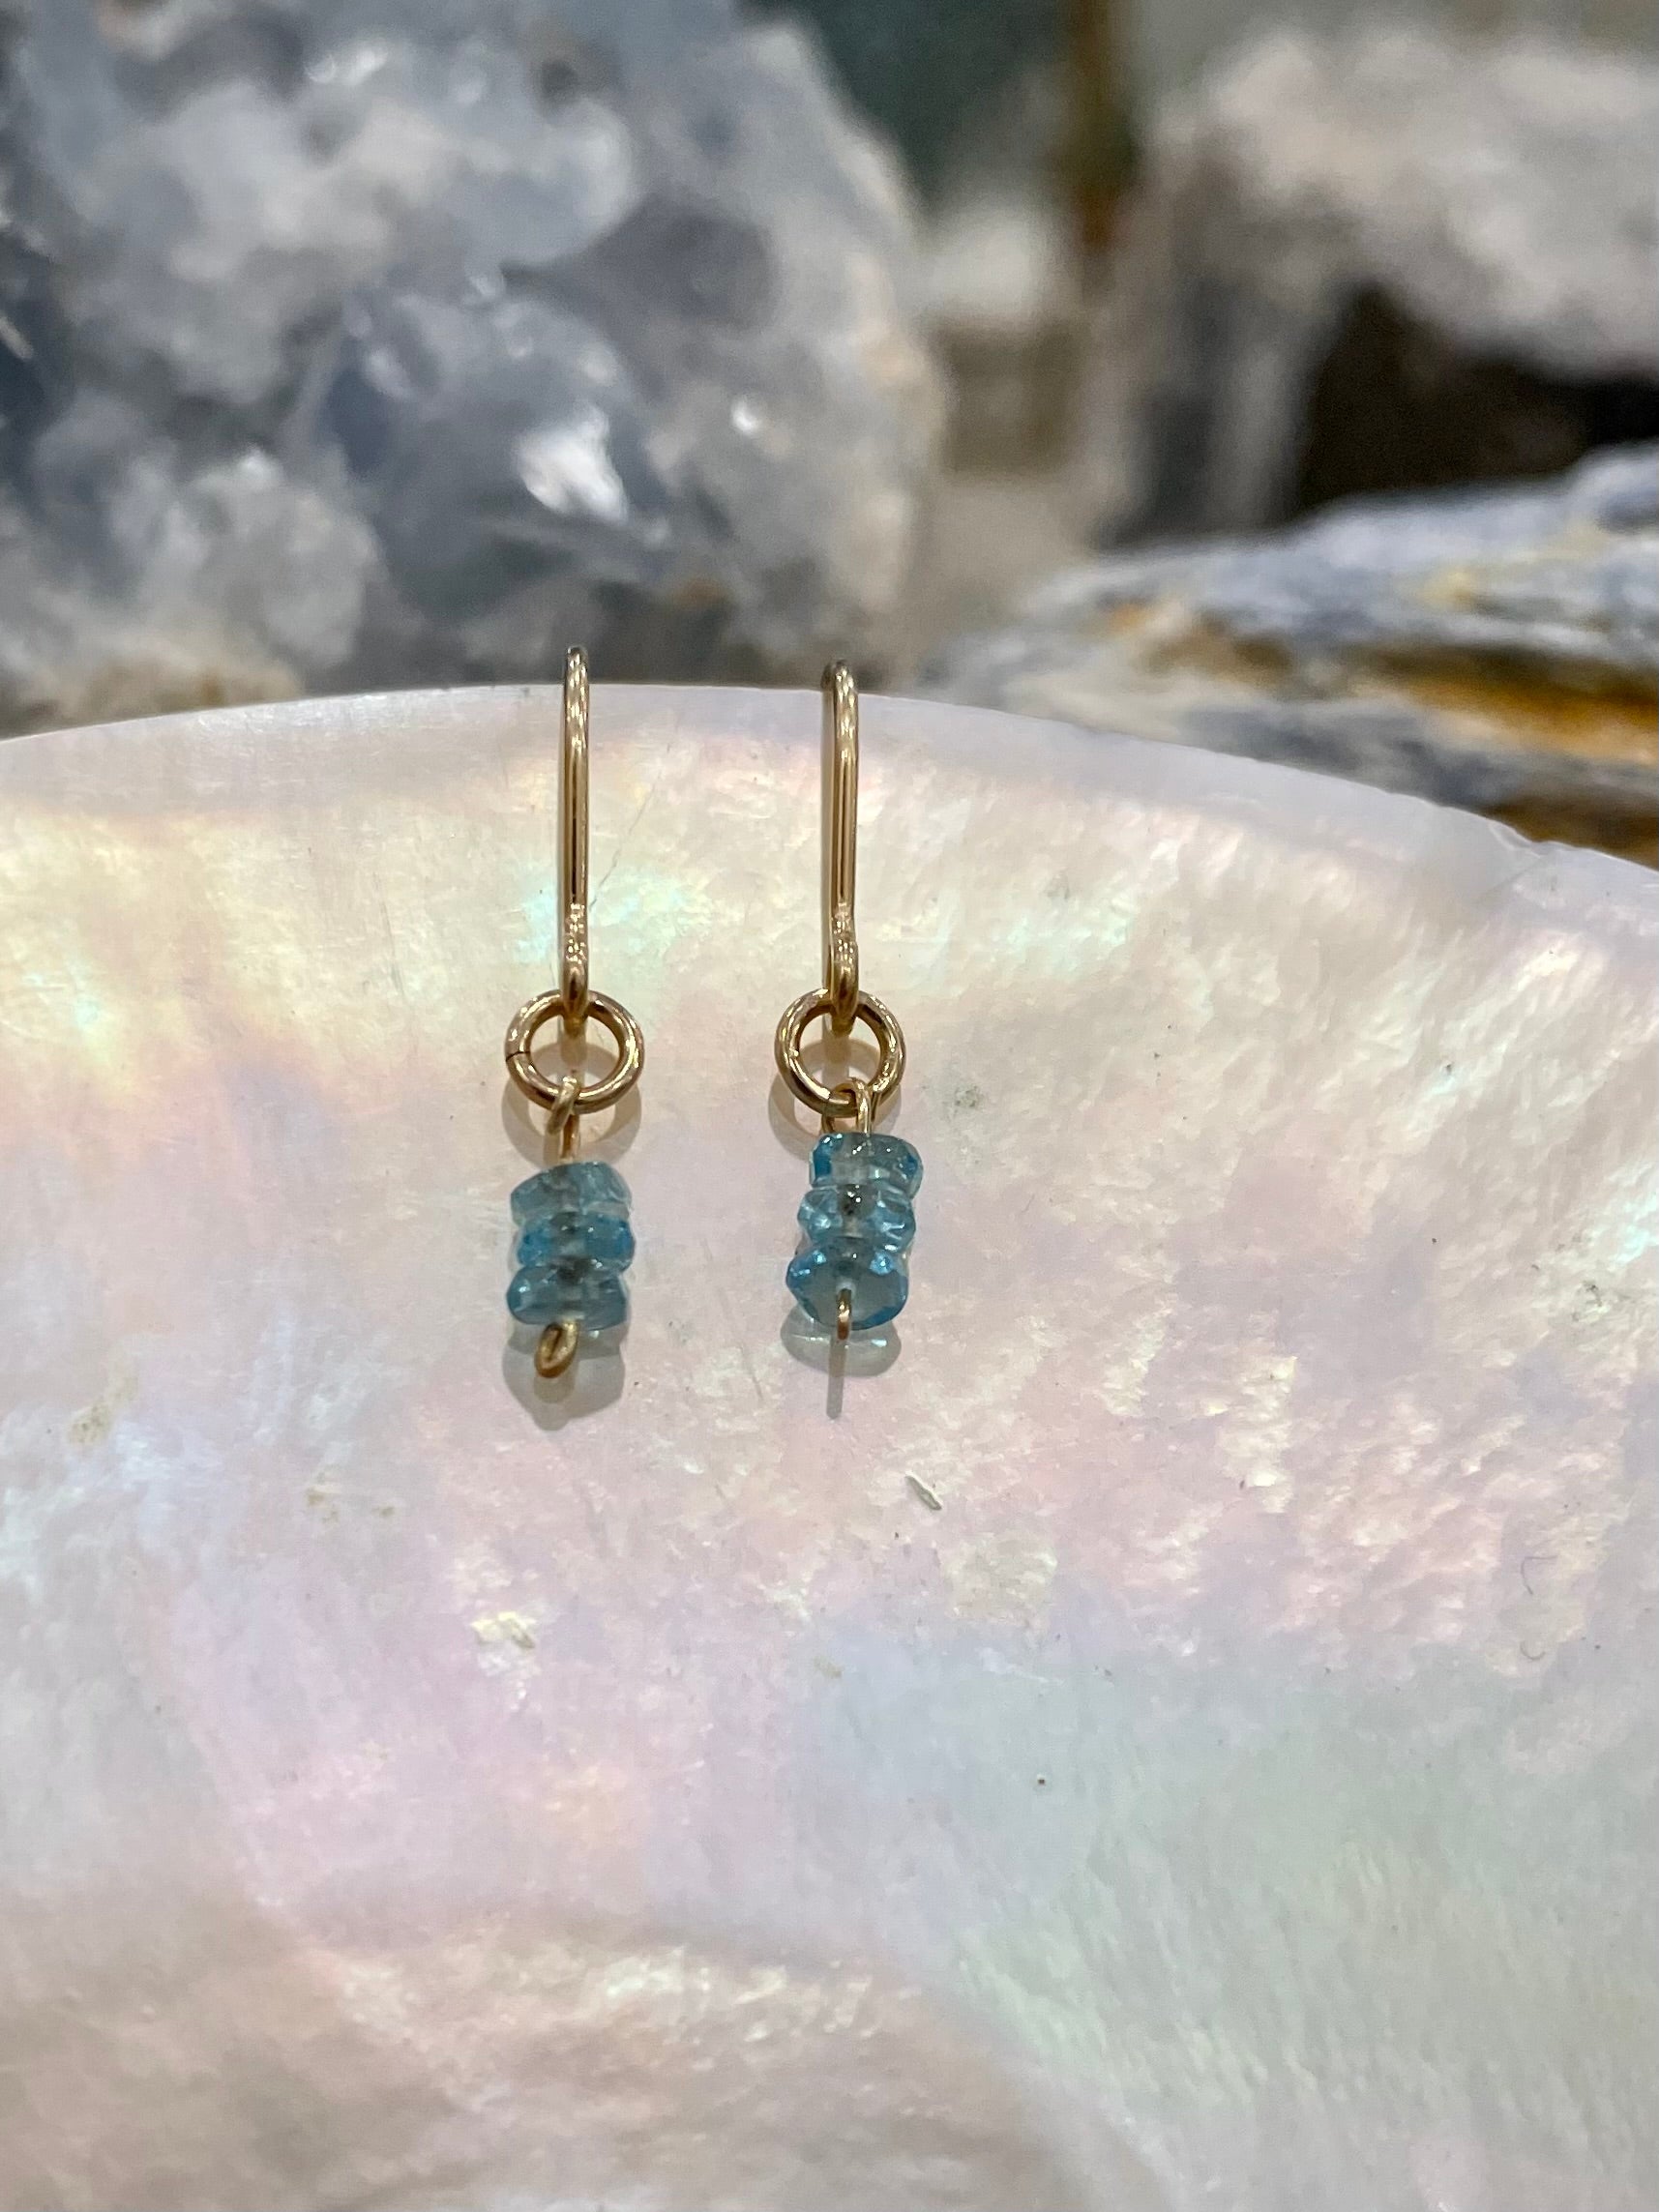 Mini gemstone hook earrings, blue stone earrings, appatite earrings in gold